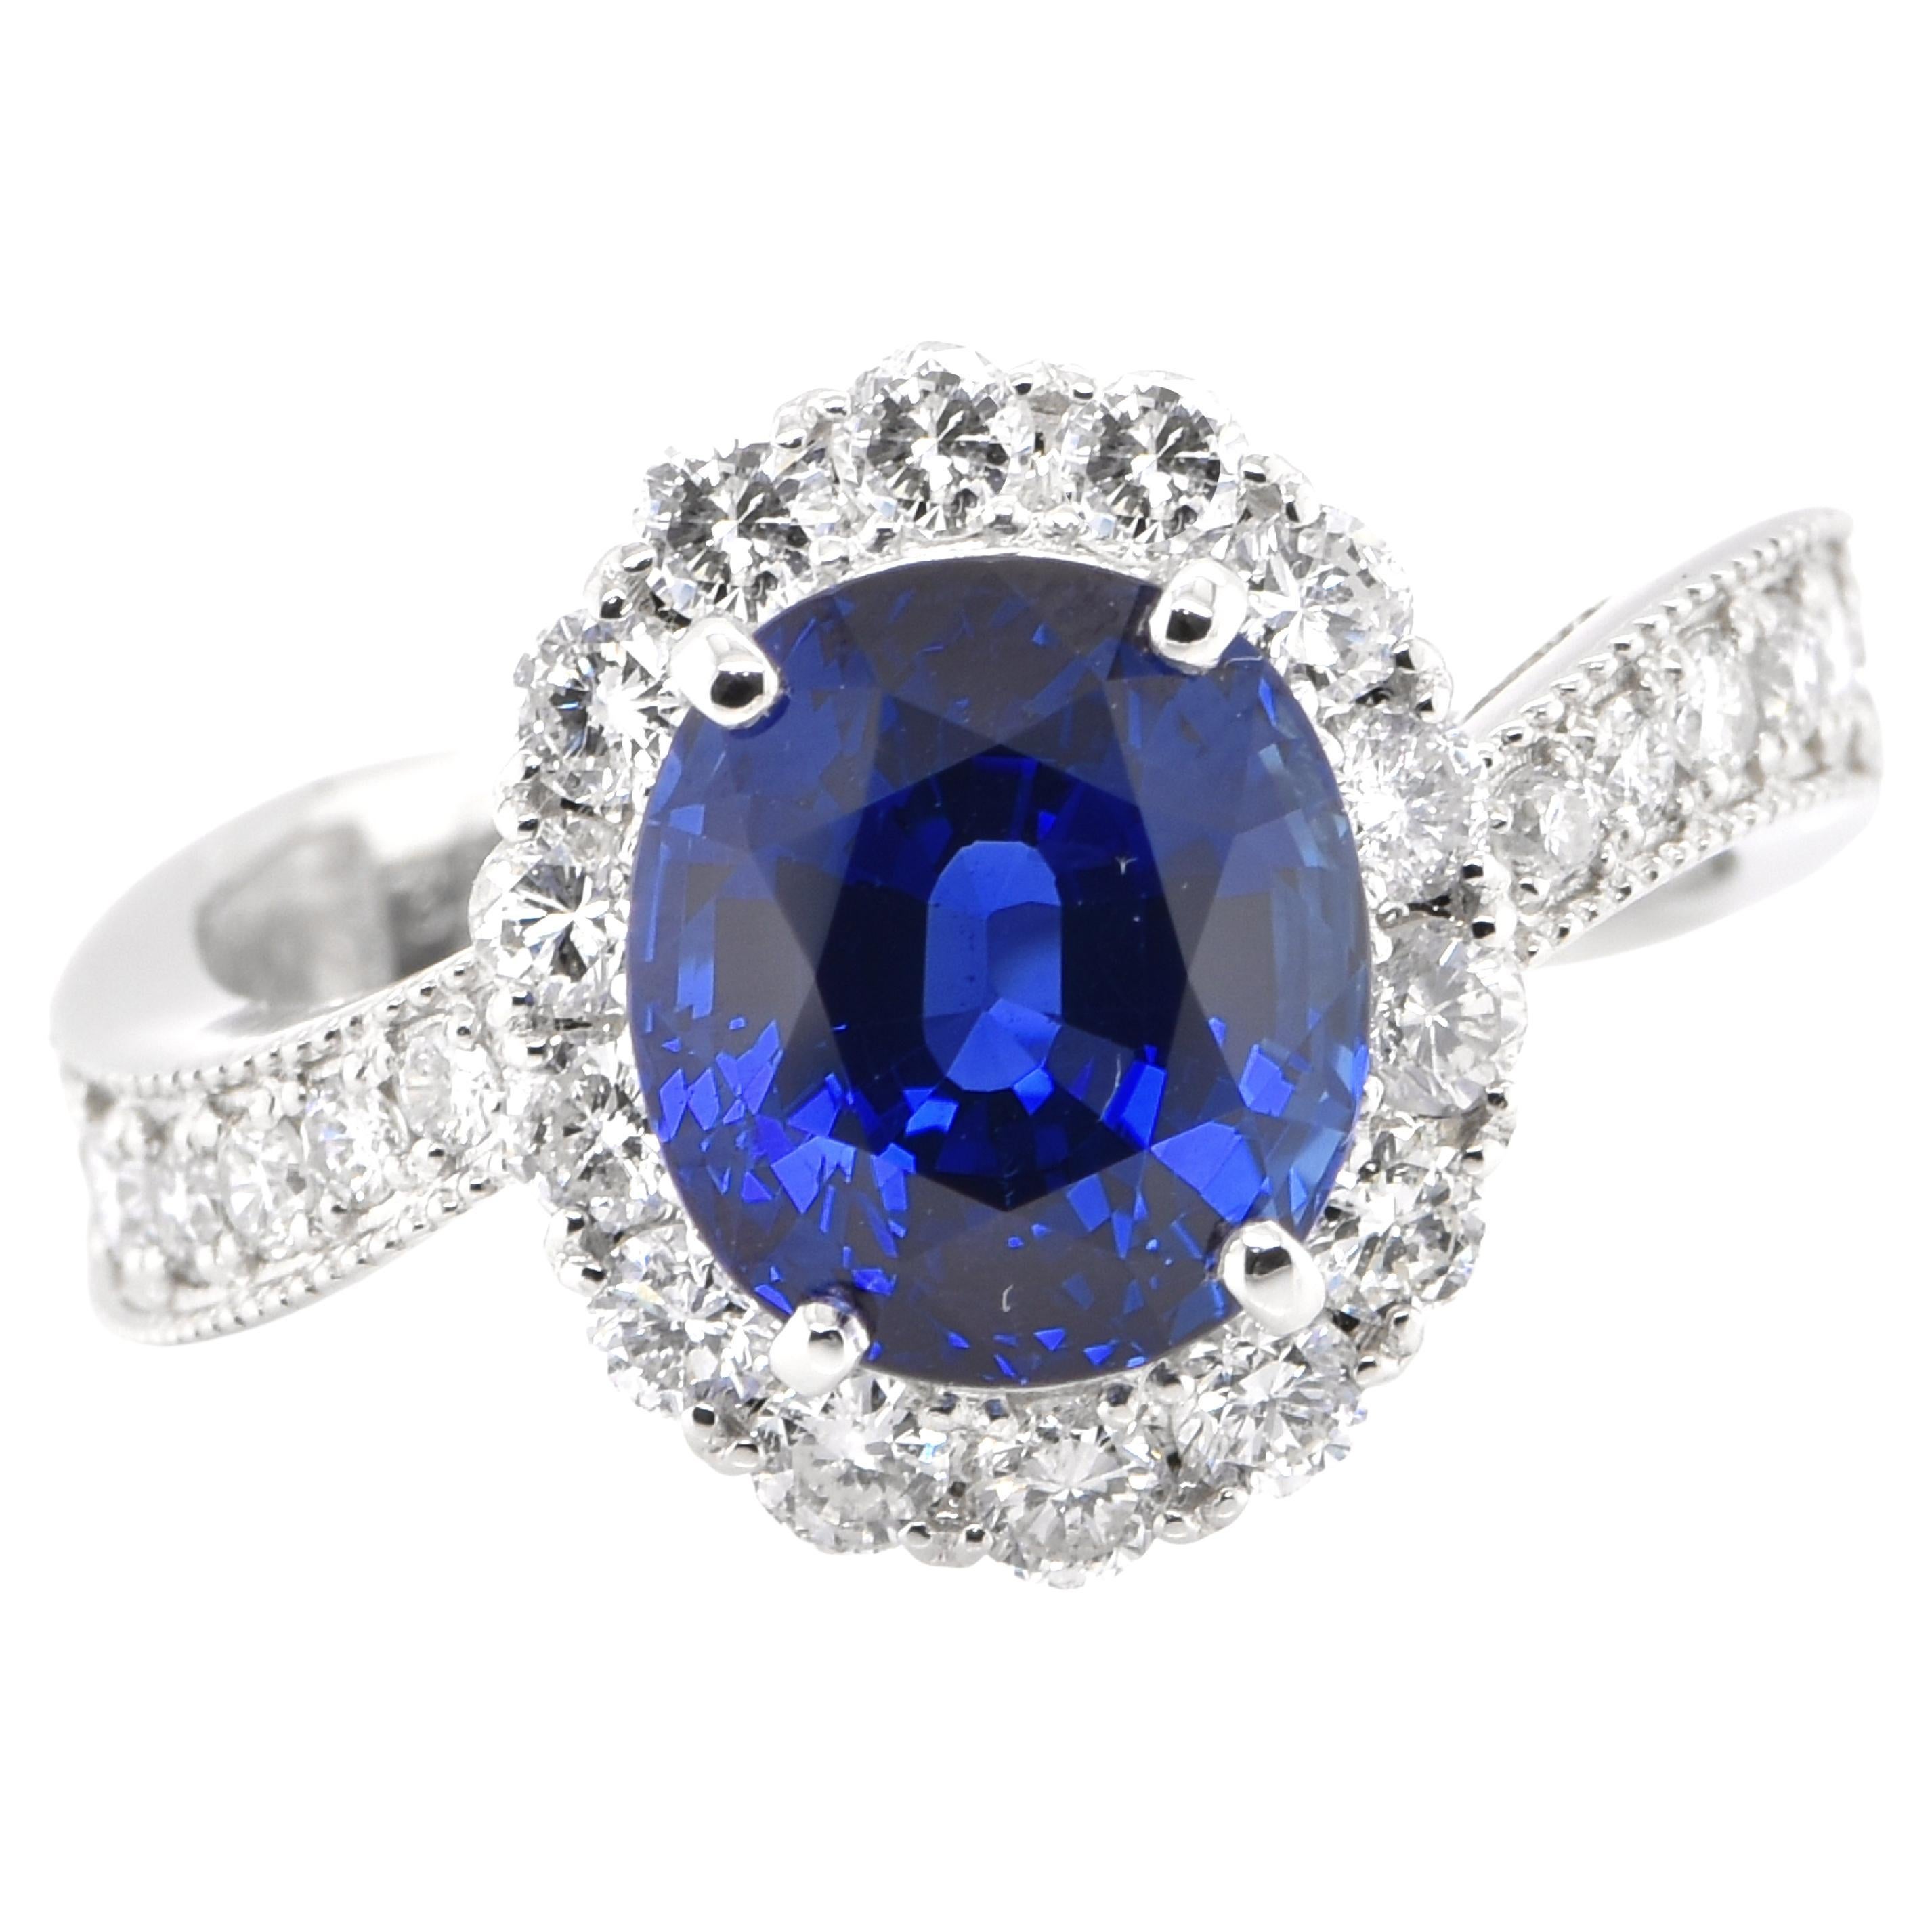 Gia Certified 3.64 Carat Natural Royal Blue Ceylon Sapphire Ring Set in Platinum